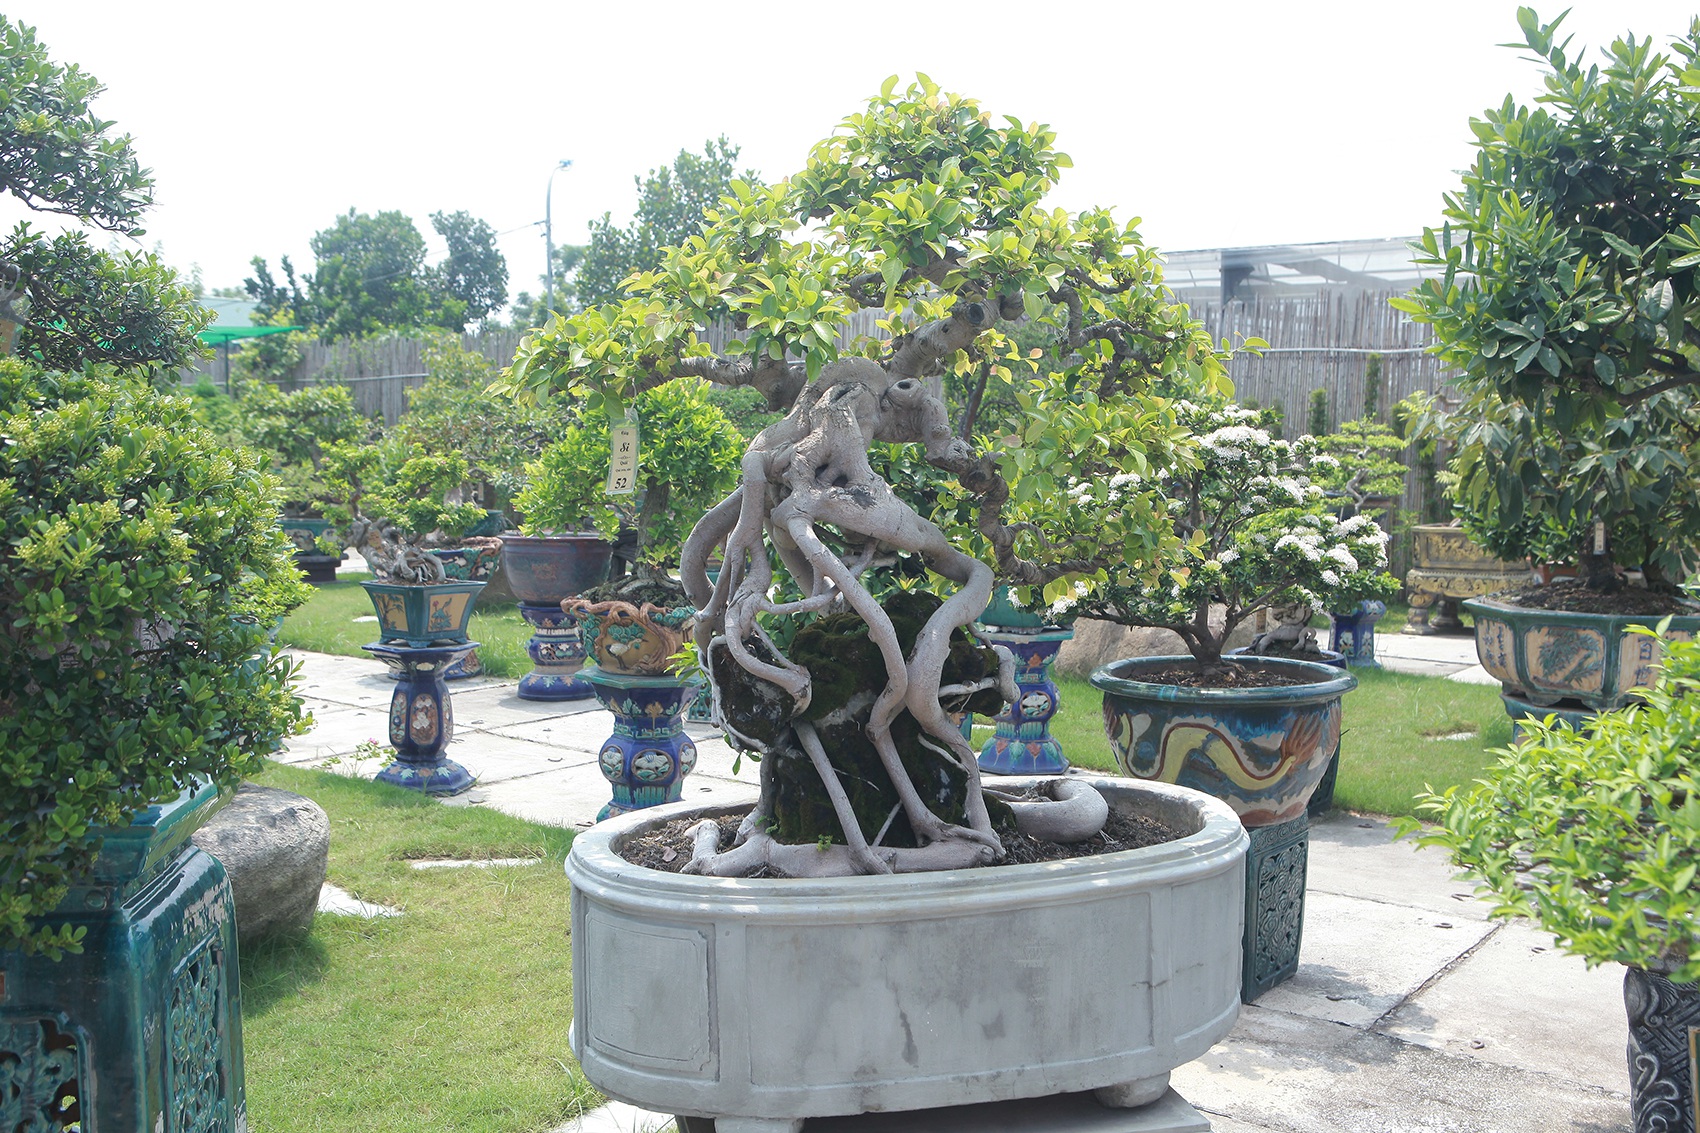 Mục sở thị khu vườn gần 1.000 cây cảnh bonsai hiếm có đất Hà Thành - 12